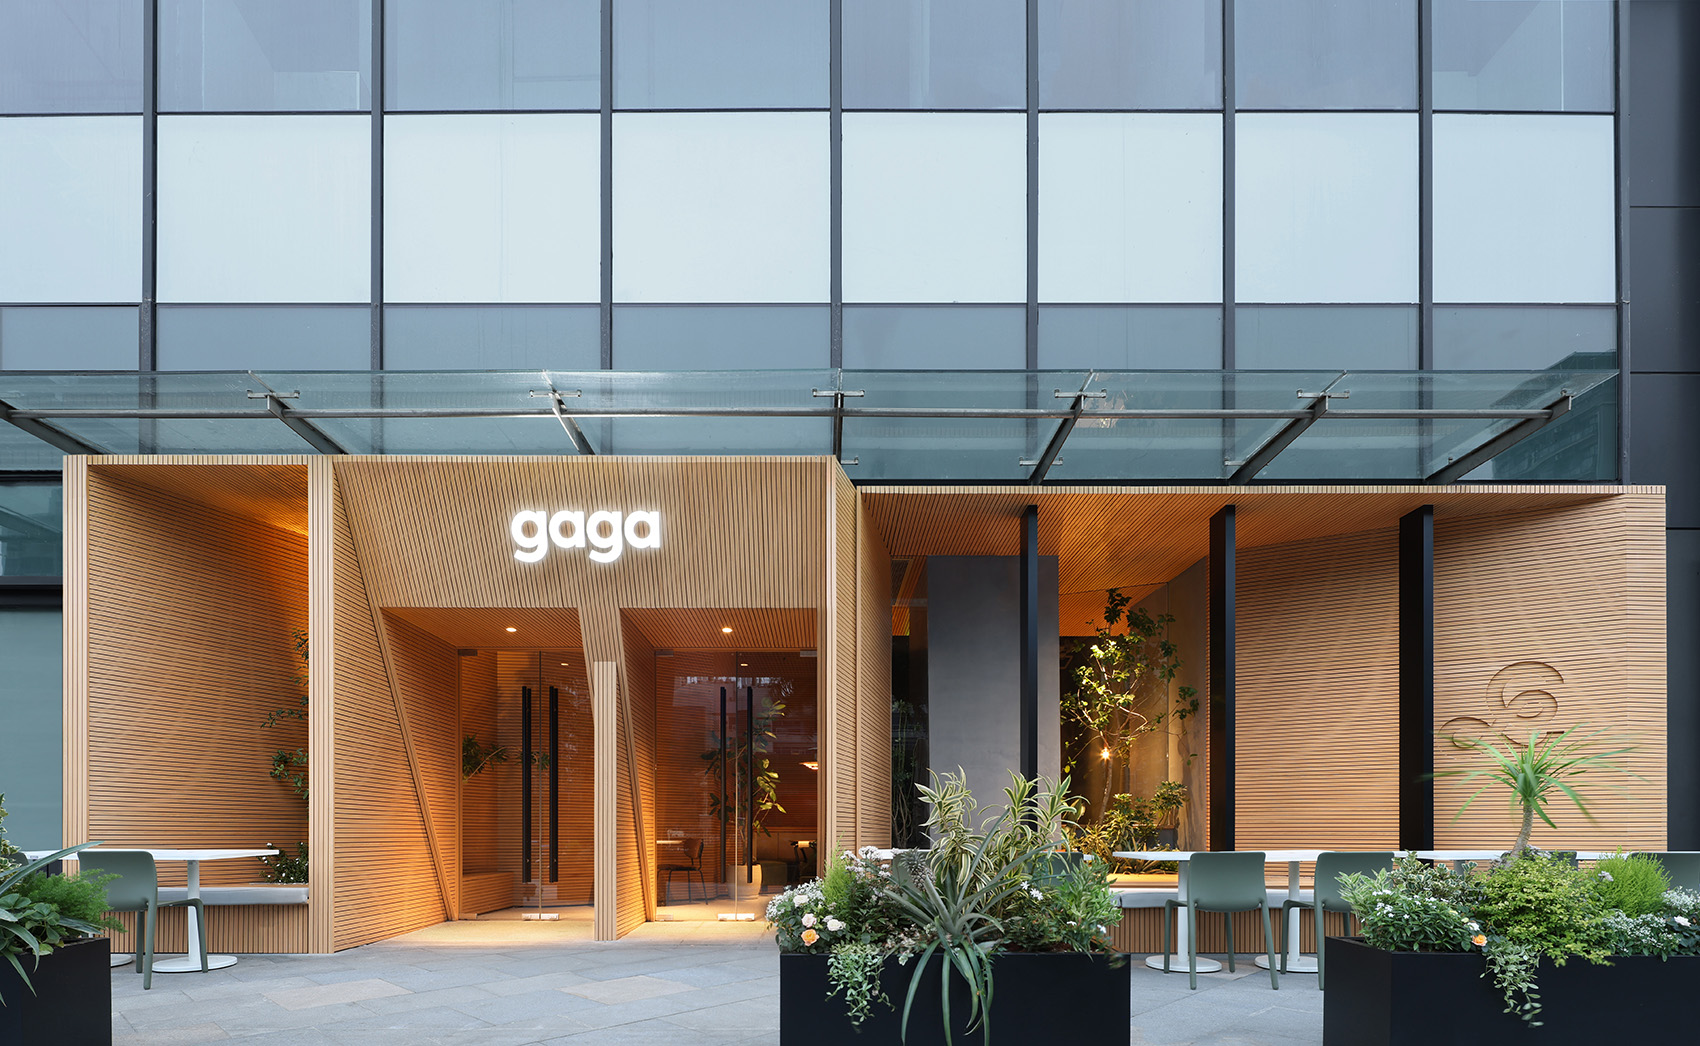 gaga西餐厅空间设计